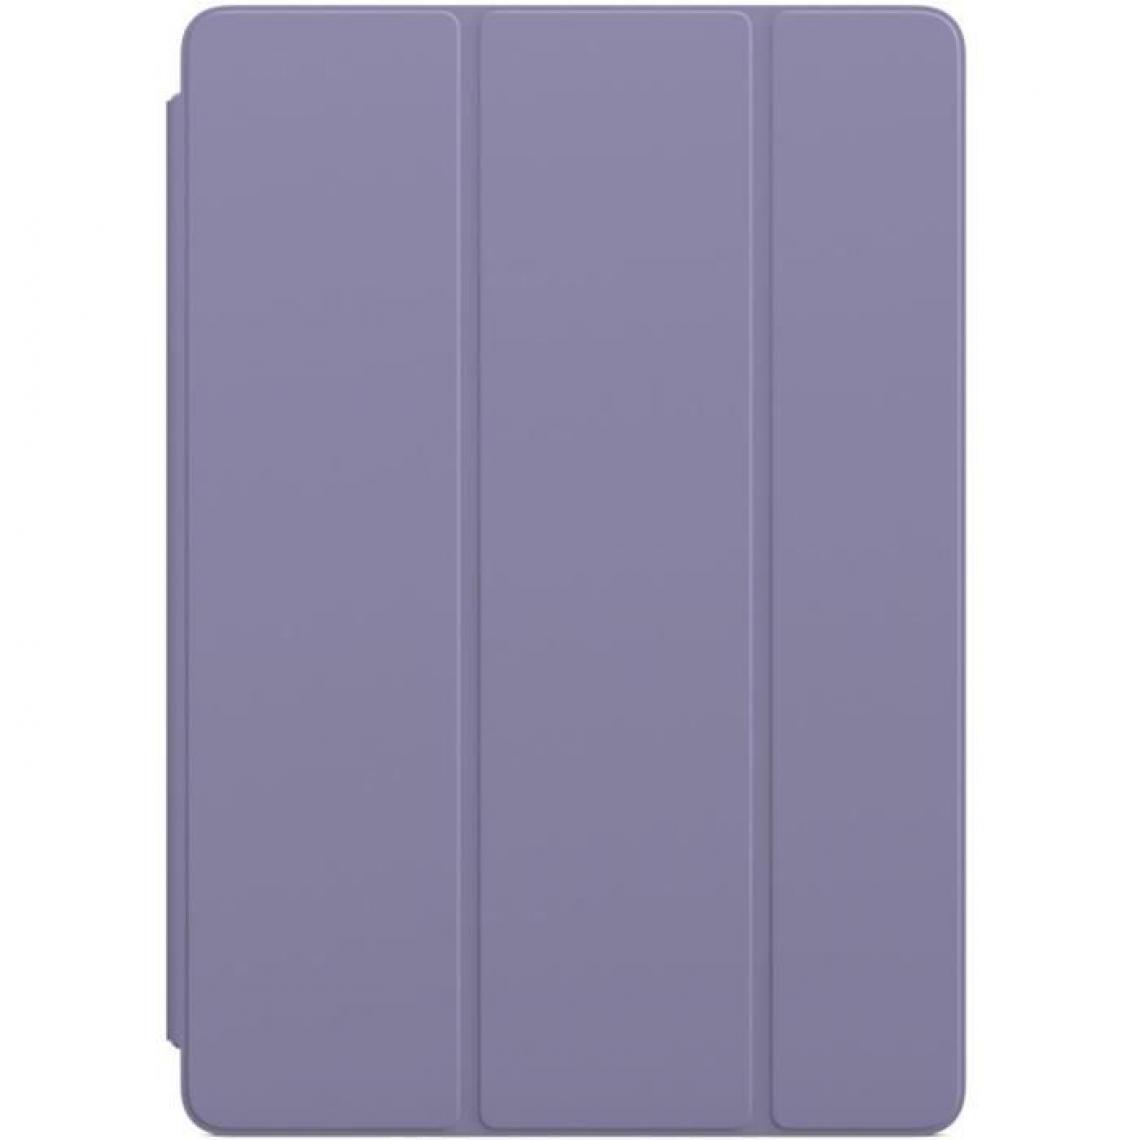 Apple - Smart Cover pour iPad (9? génération) - Lavande anglaise - iPad